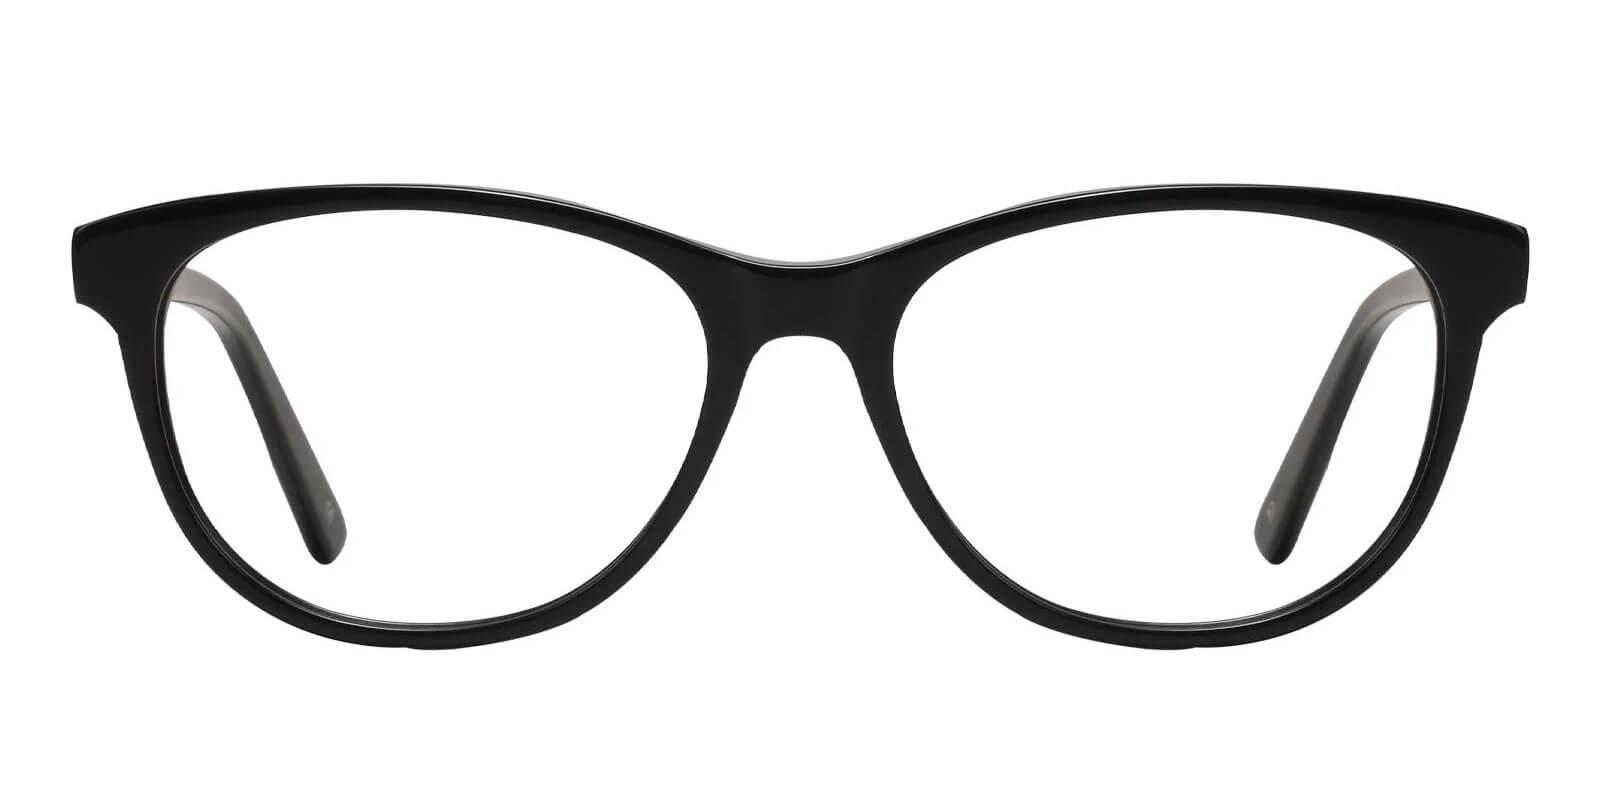 Neptune Black Acetate Eyeglasses , SpringHinges , UniversalBridgeFit Frames from ABBE Glasses